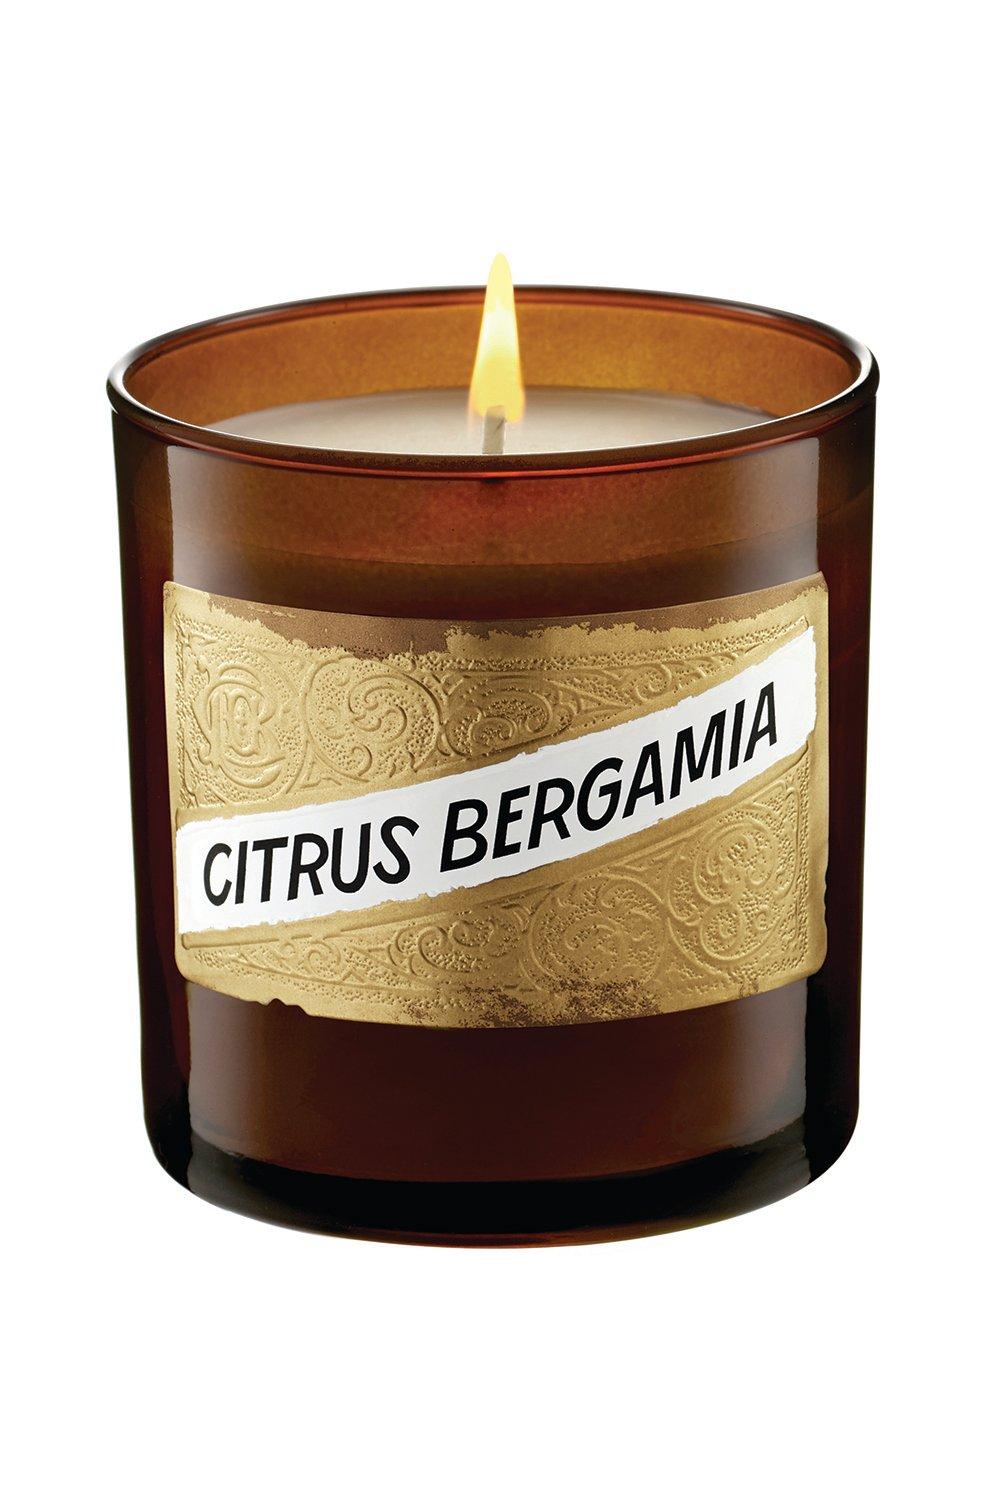 Citrus Bergamia (Bergamot) Candle